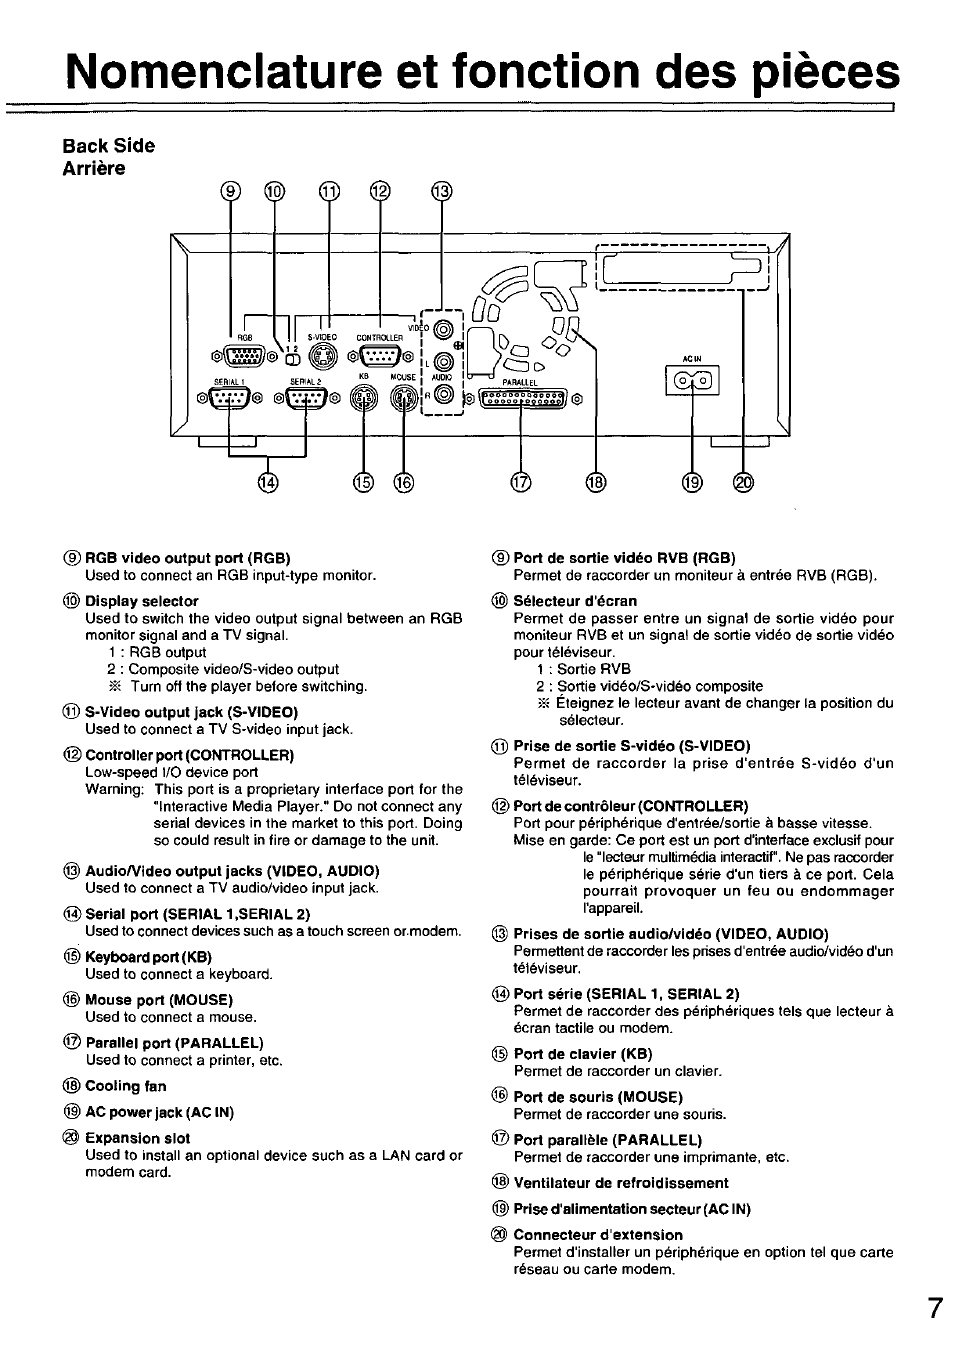 Nomenclature et fonction des pieces, Back side arrière | Panasonic FZ-35S Manuel d'utilisation | Page 7 / 12